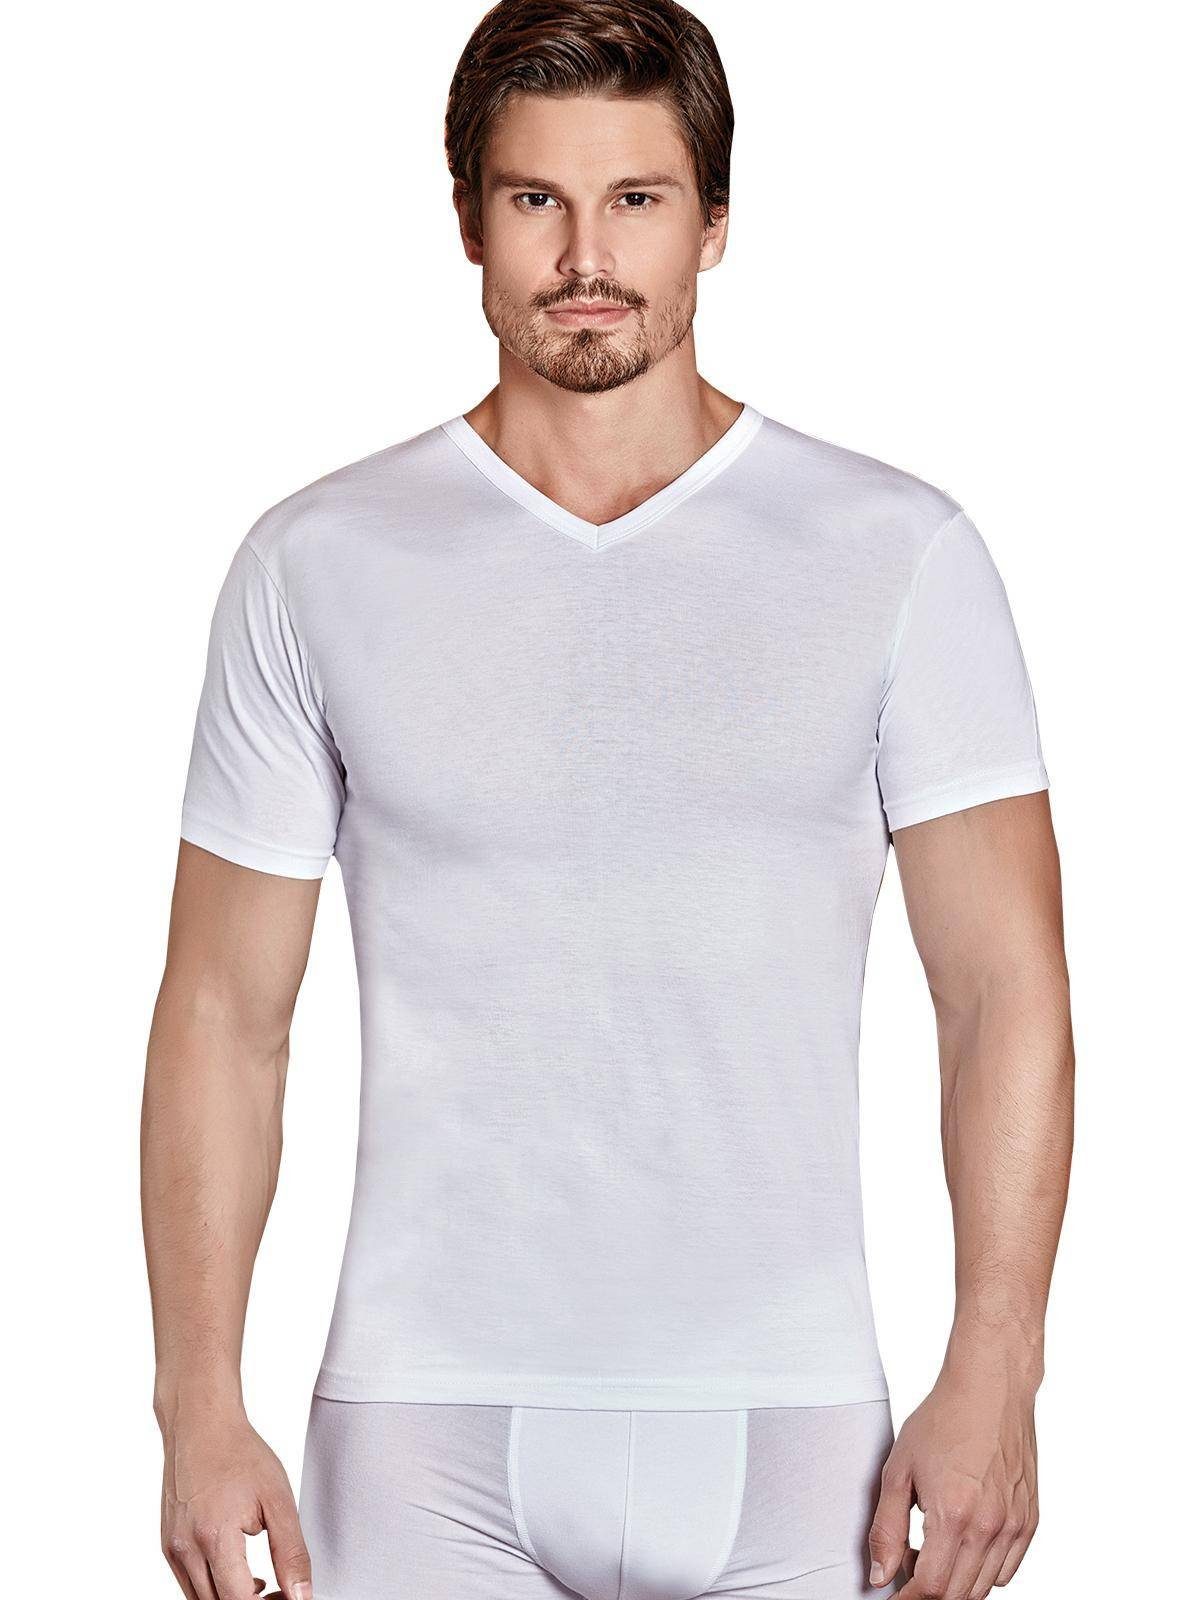 Berrak Collection Unterhemd Kurzarm V-Ausschnitt Herren Business Shirt (XXL / 60-62) Weiß, BS1007